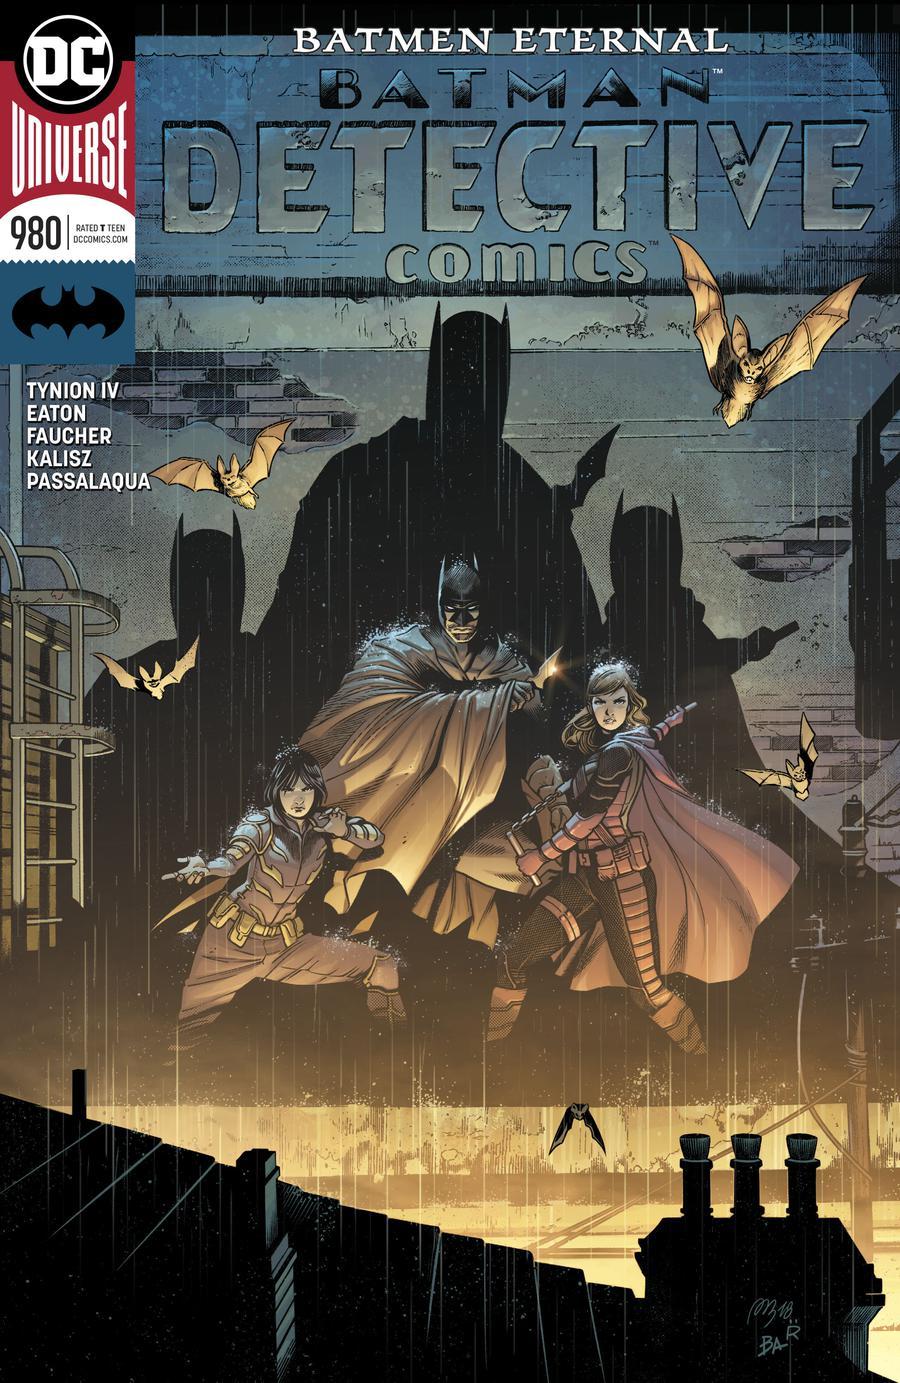 Detective Comics Vol. 2 #980